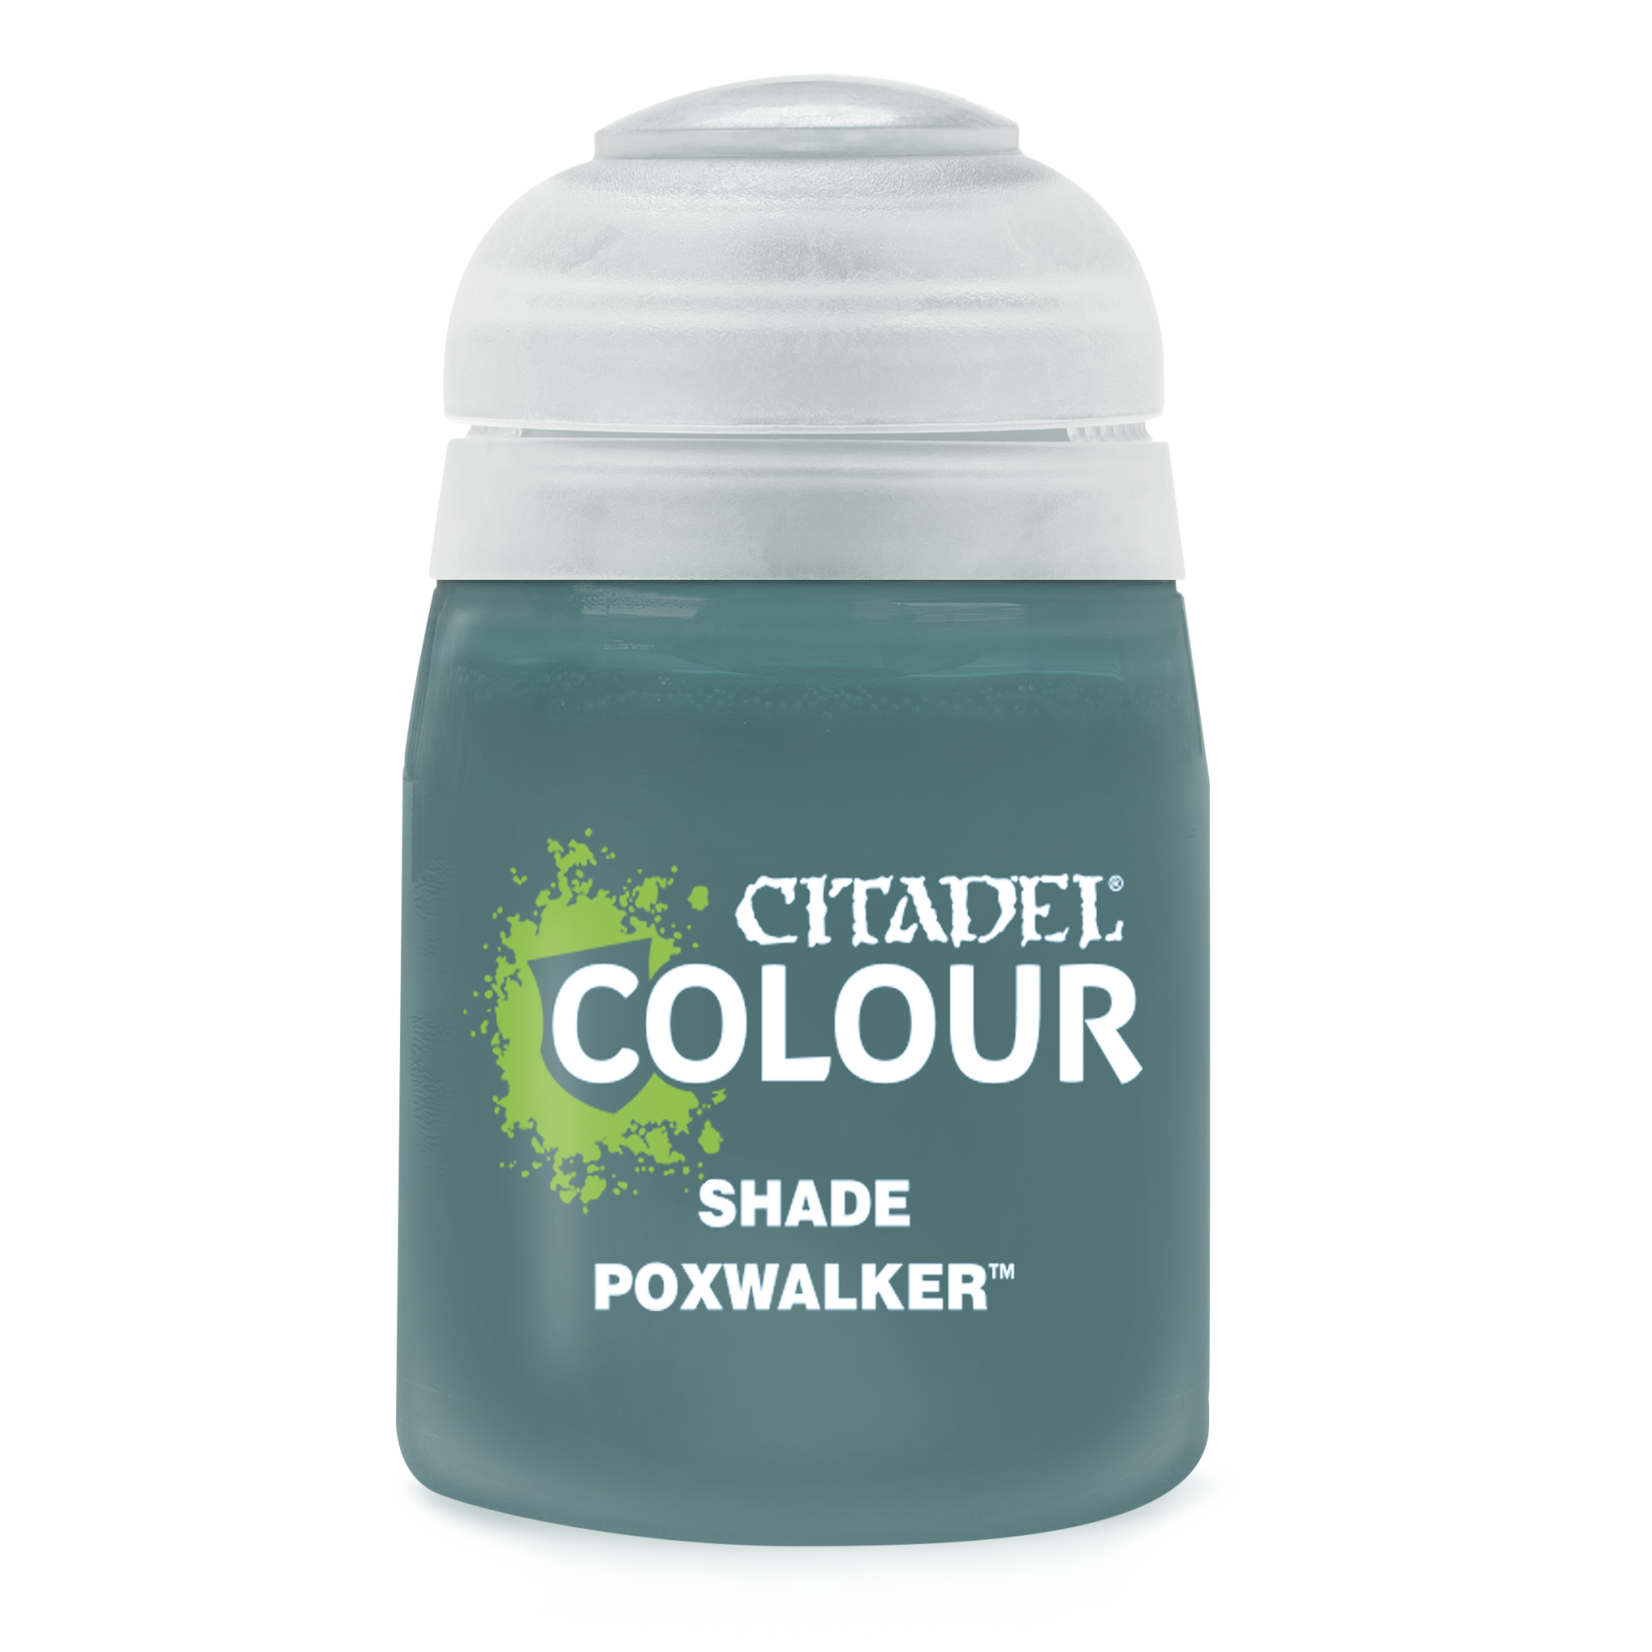 Citadel Shade Poxwalker 18ml New Formula